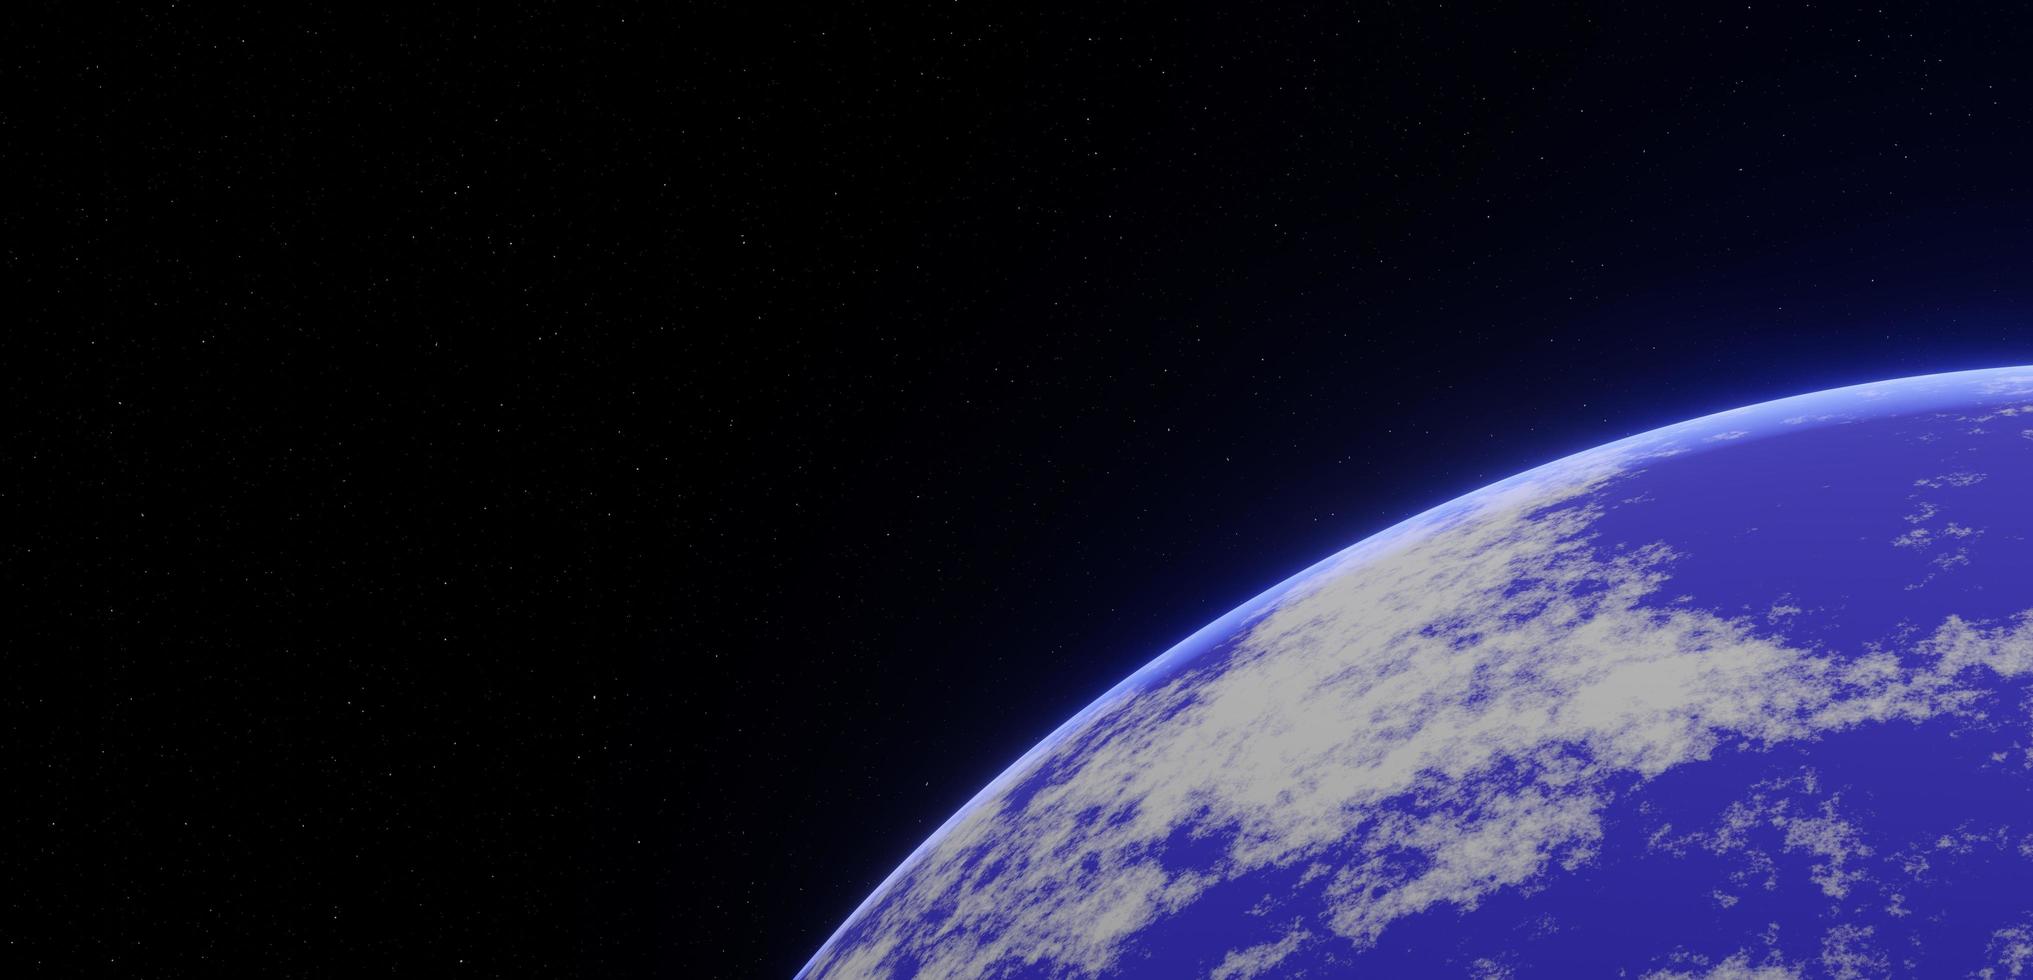 planeet aarde in buitenste spatie.3d renderen foto